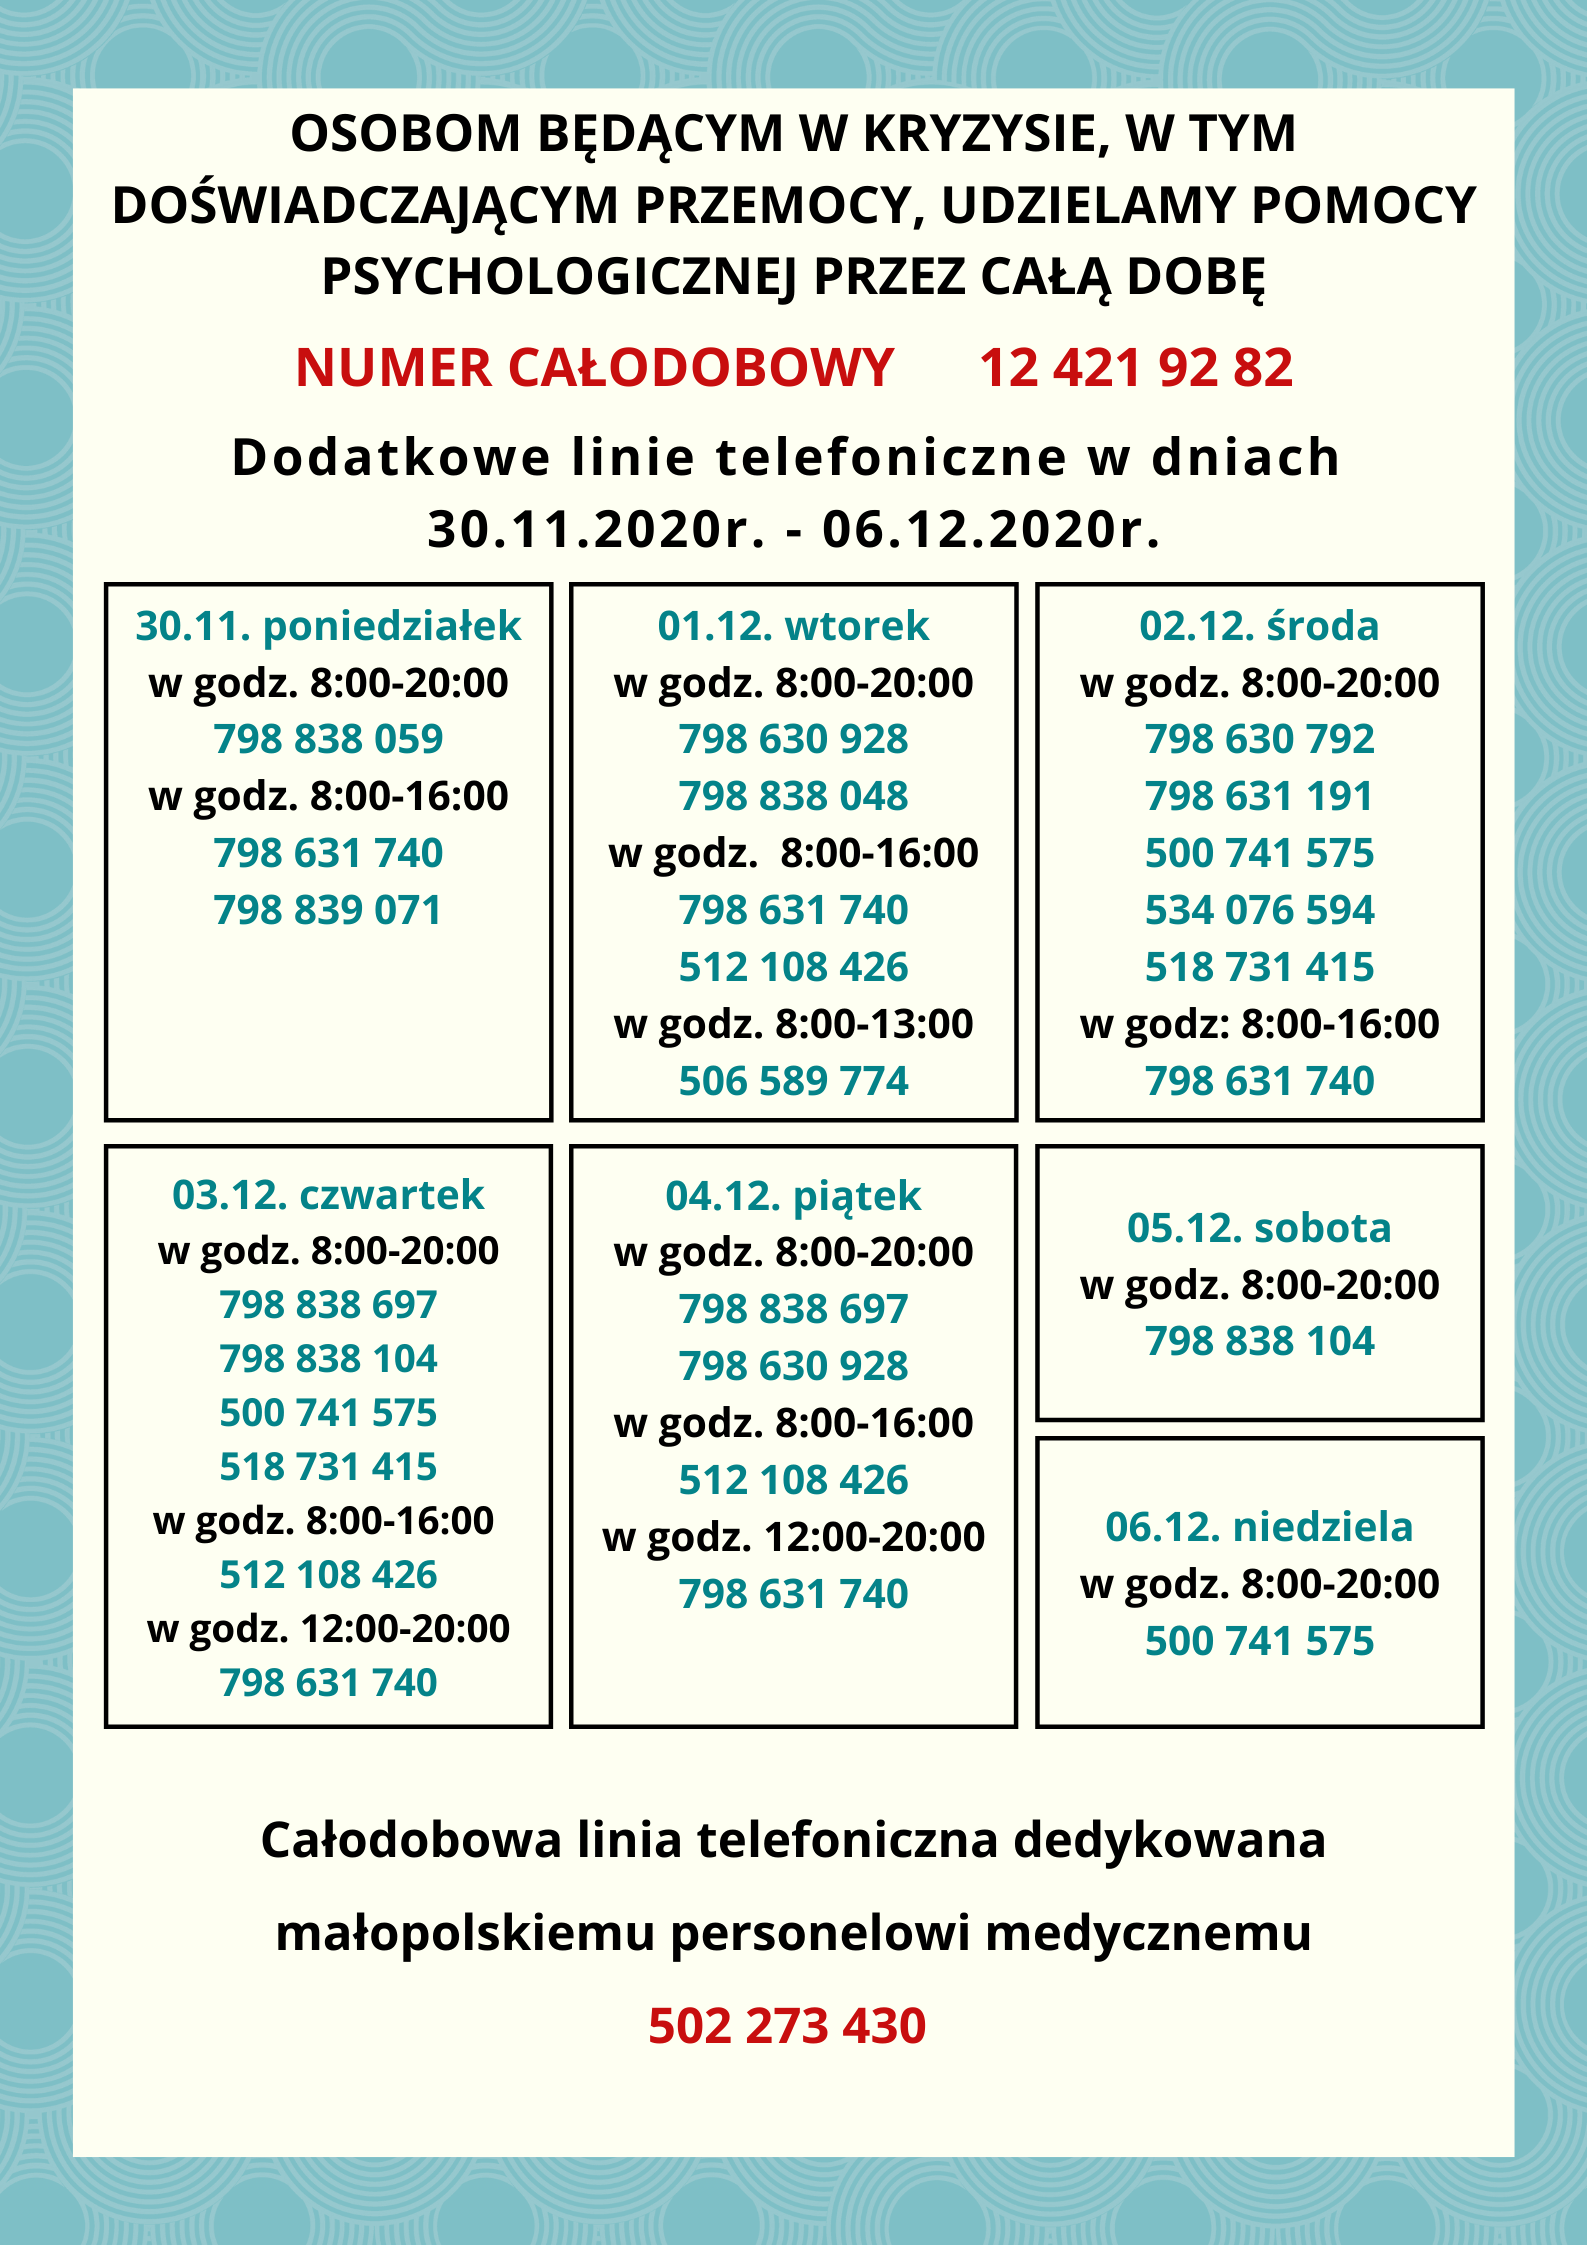 Dodatkowe linie telefoniczne w dniach 30.11.2020r. 06.12